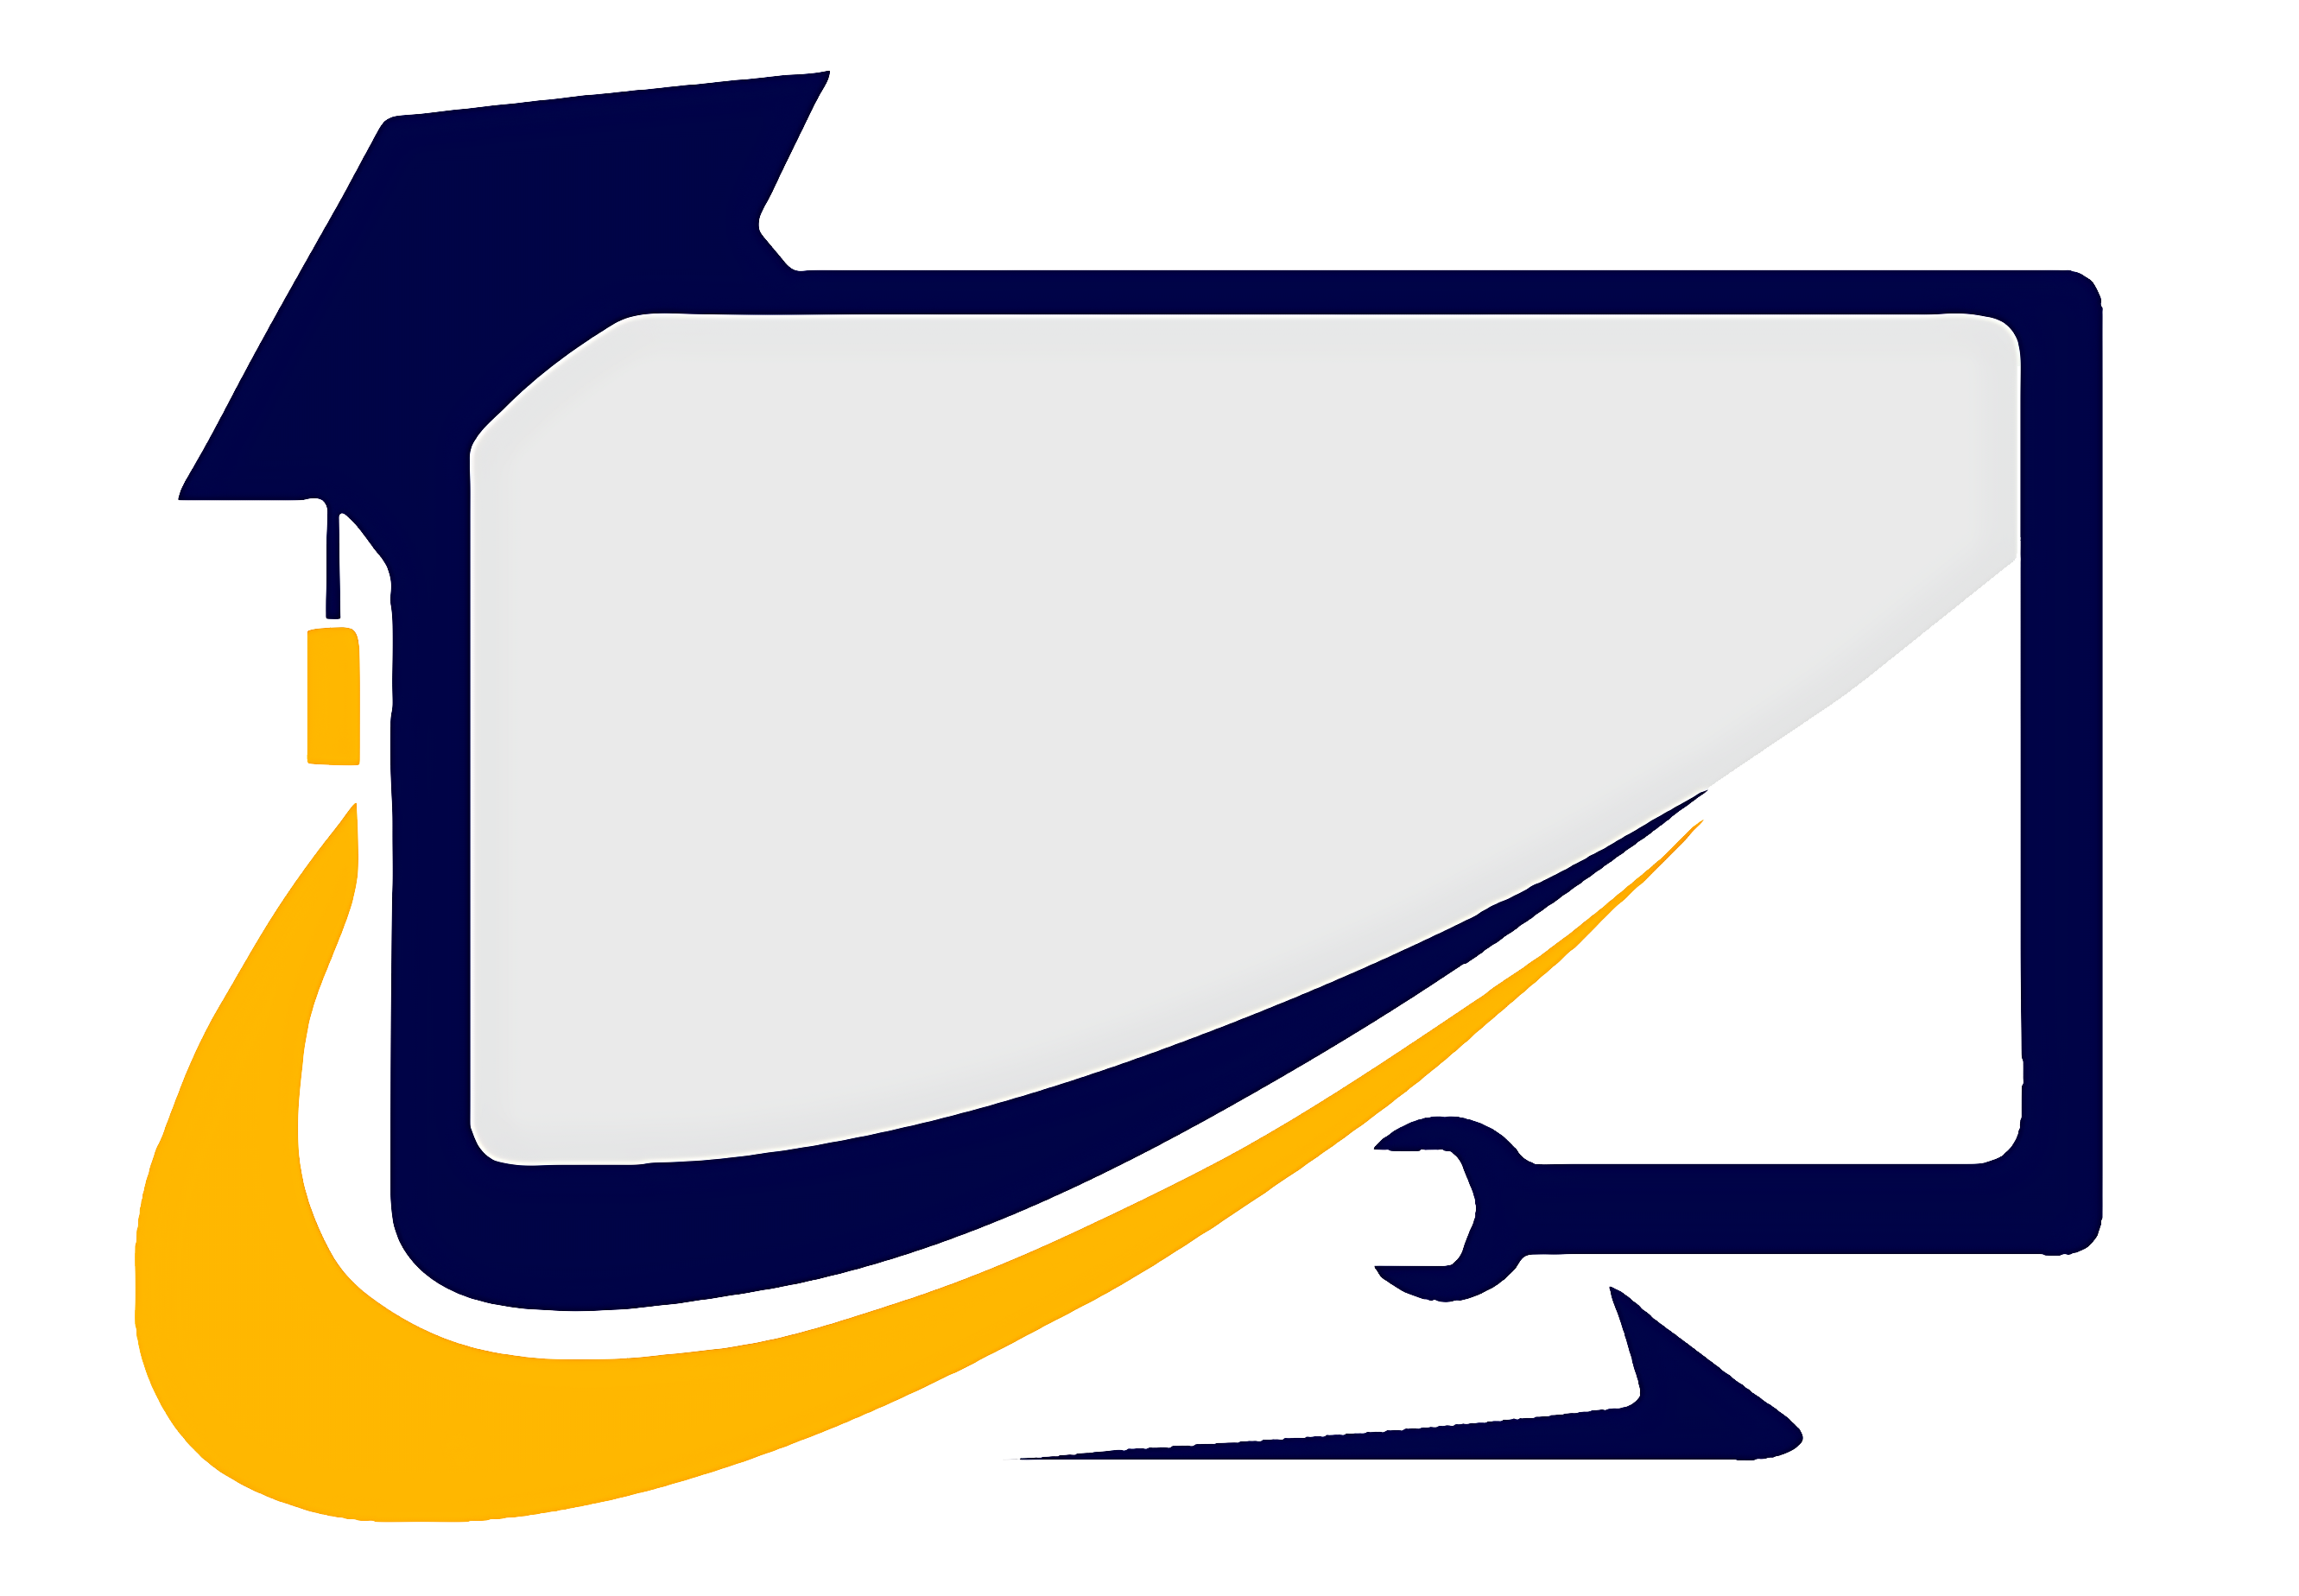 Logo Clases de Computación Viña del Mar - fondo blanco.png